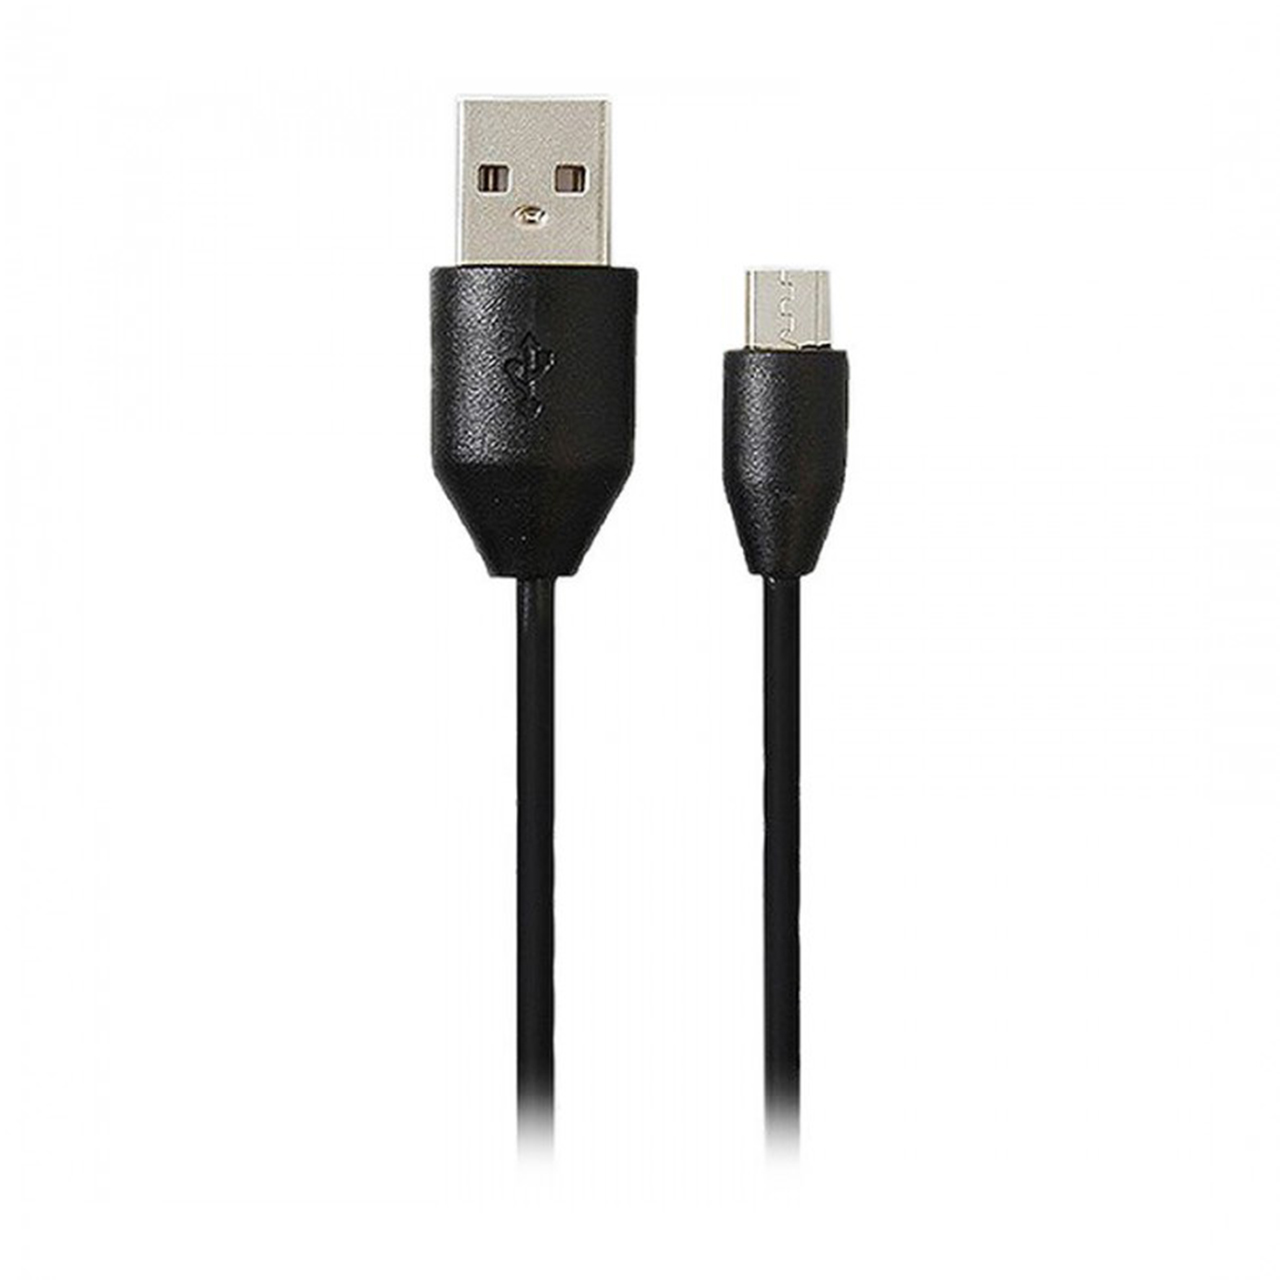  کابل تبدیل USB به microUSB آمپلیفای مدل AM-6001 طول 1.2 متر